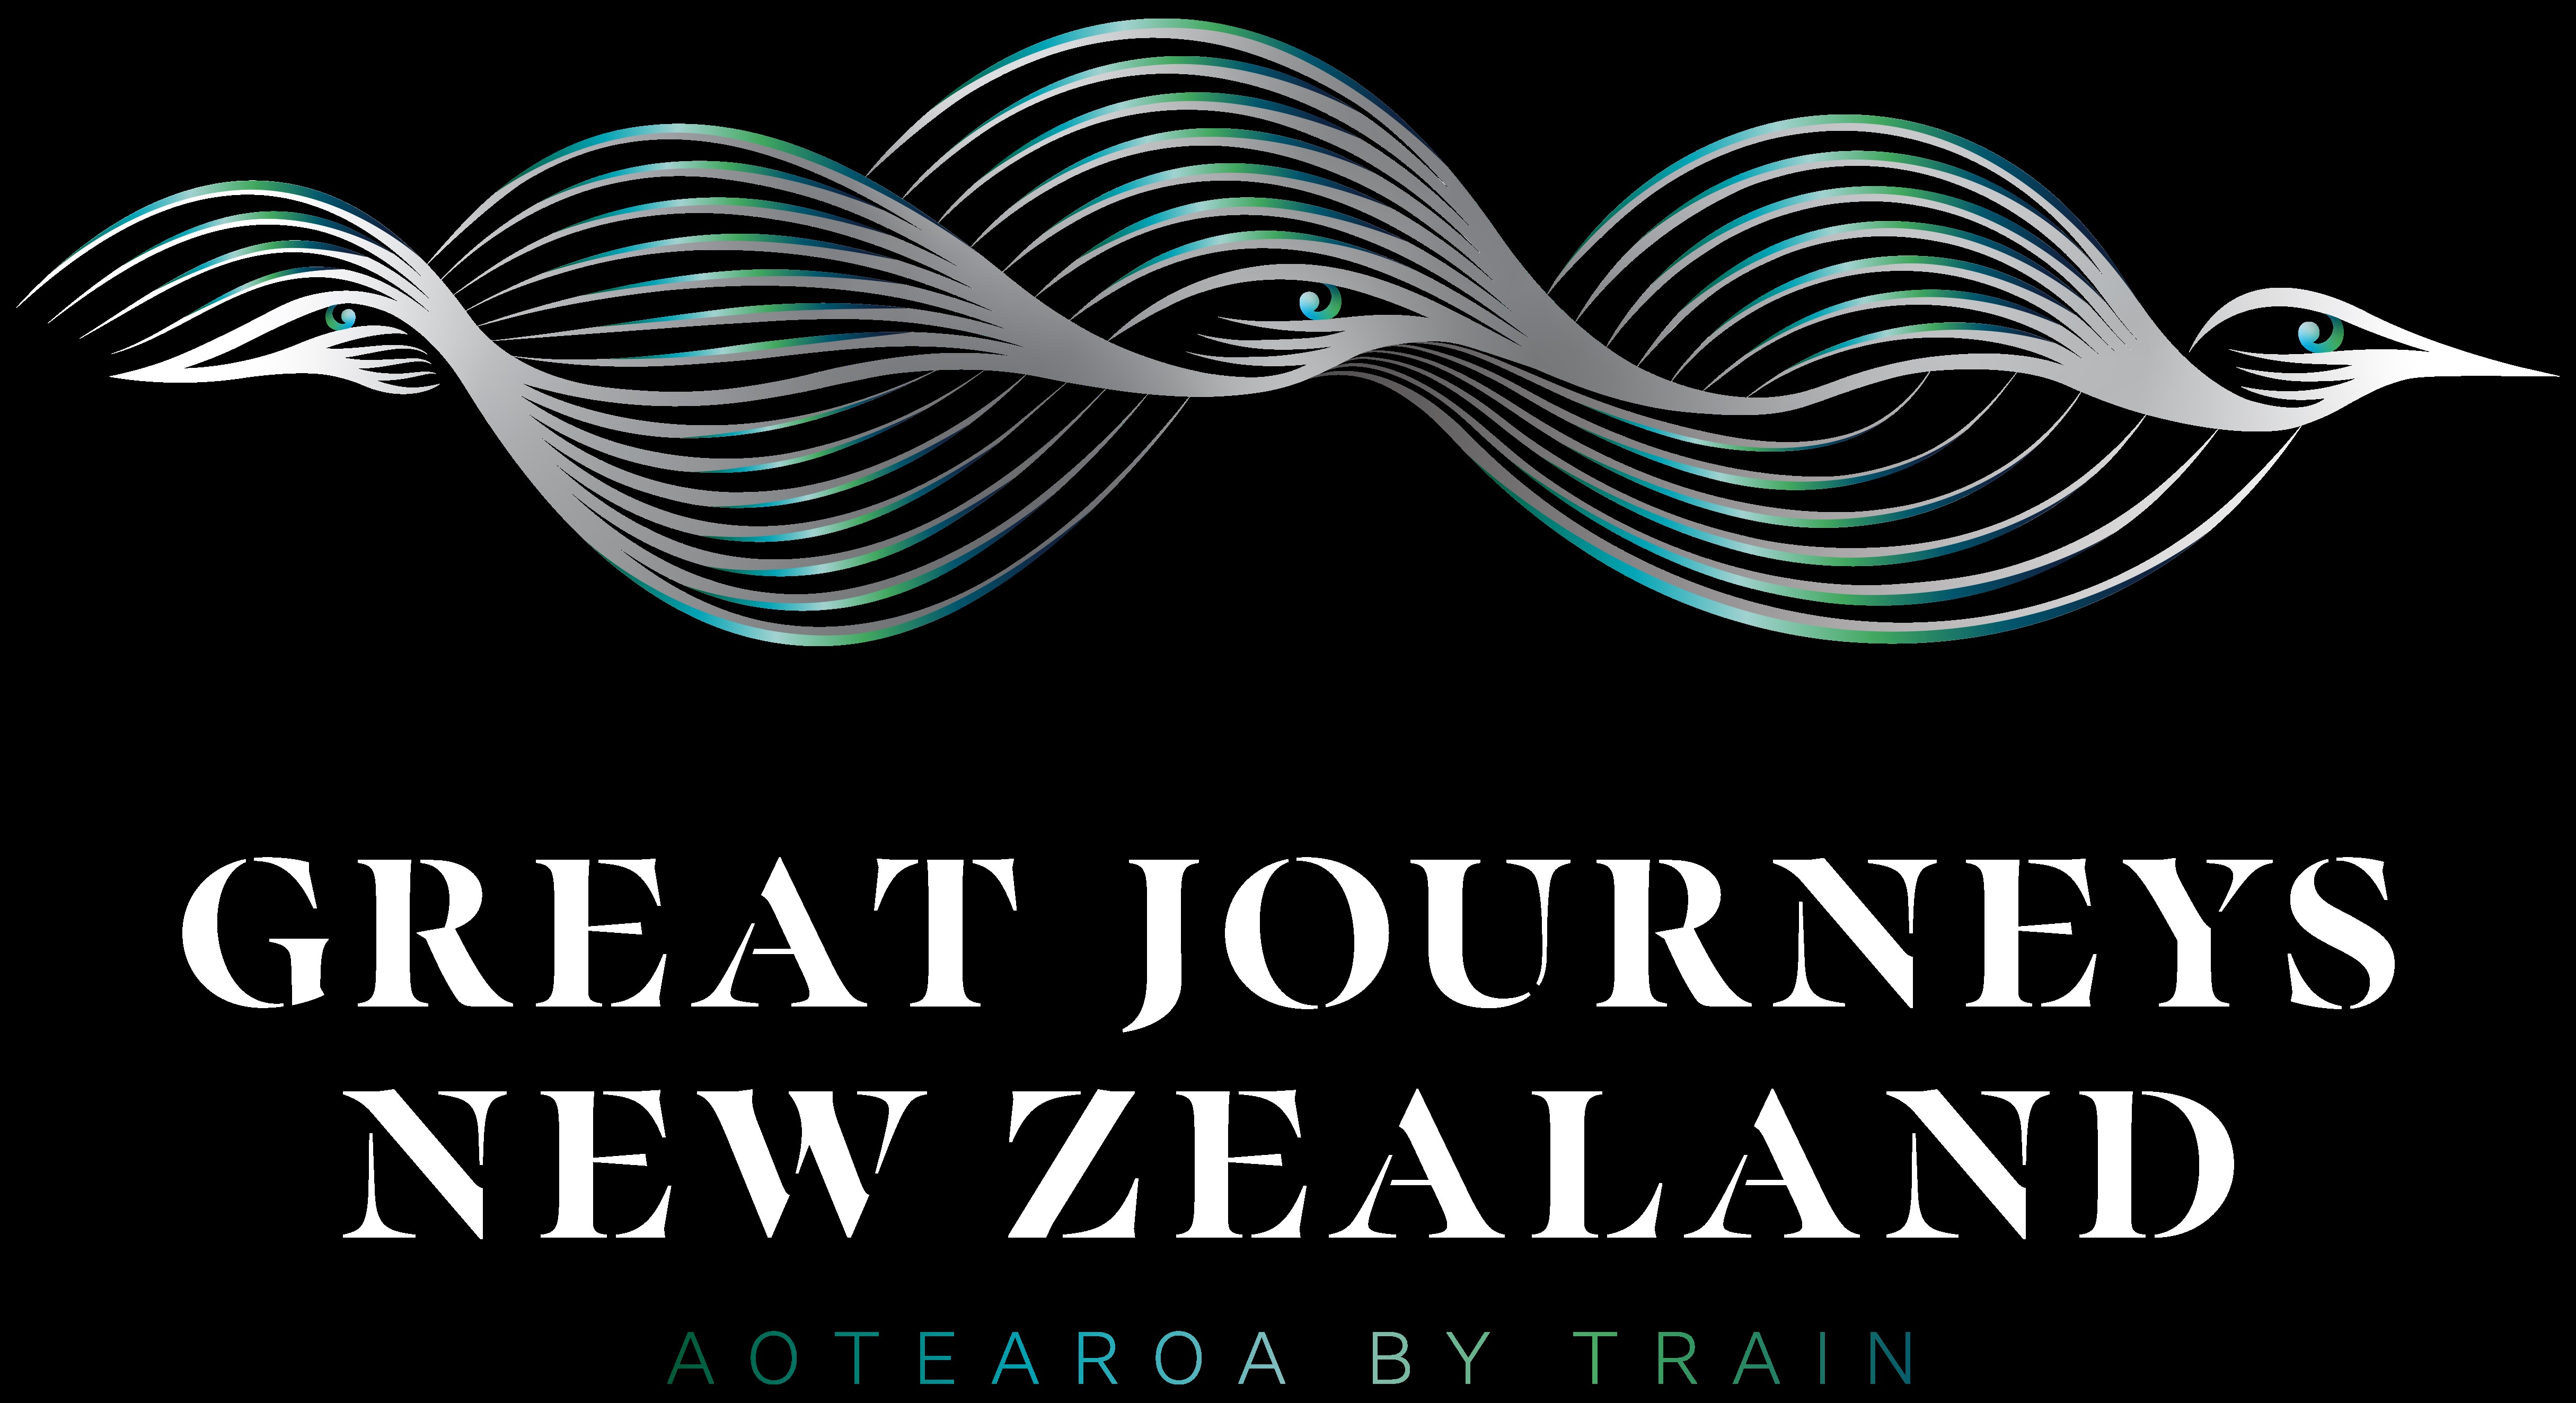 
Great Journeys New Zealand